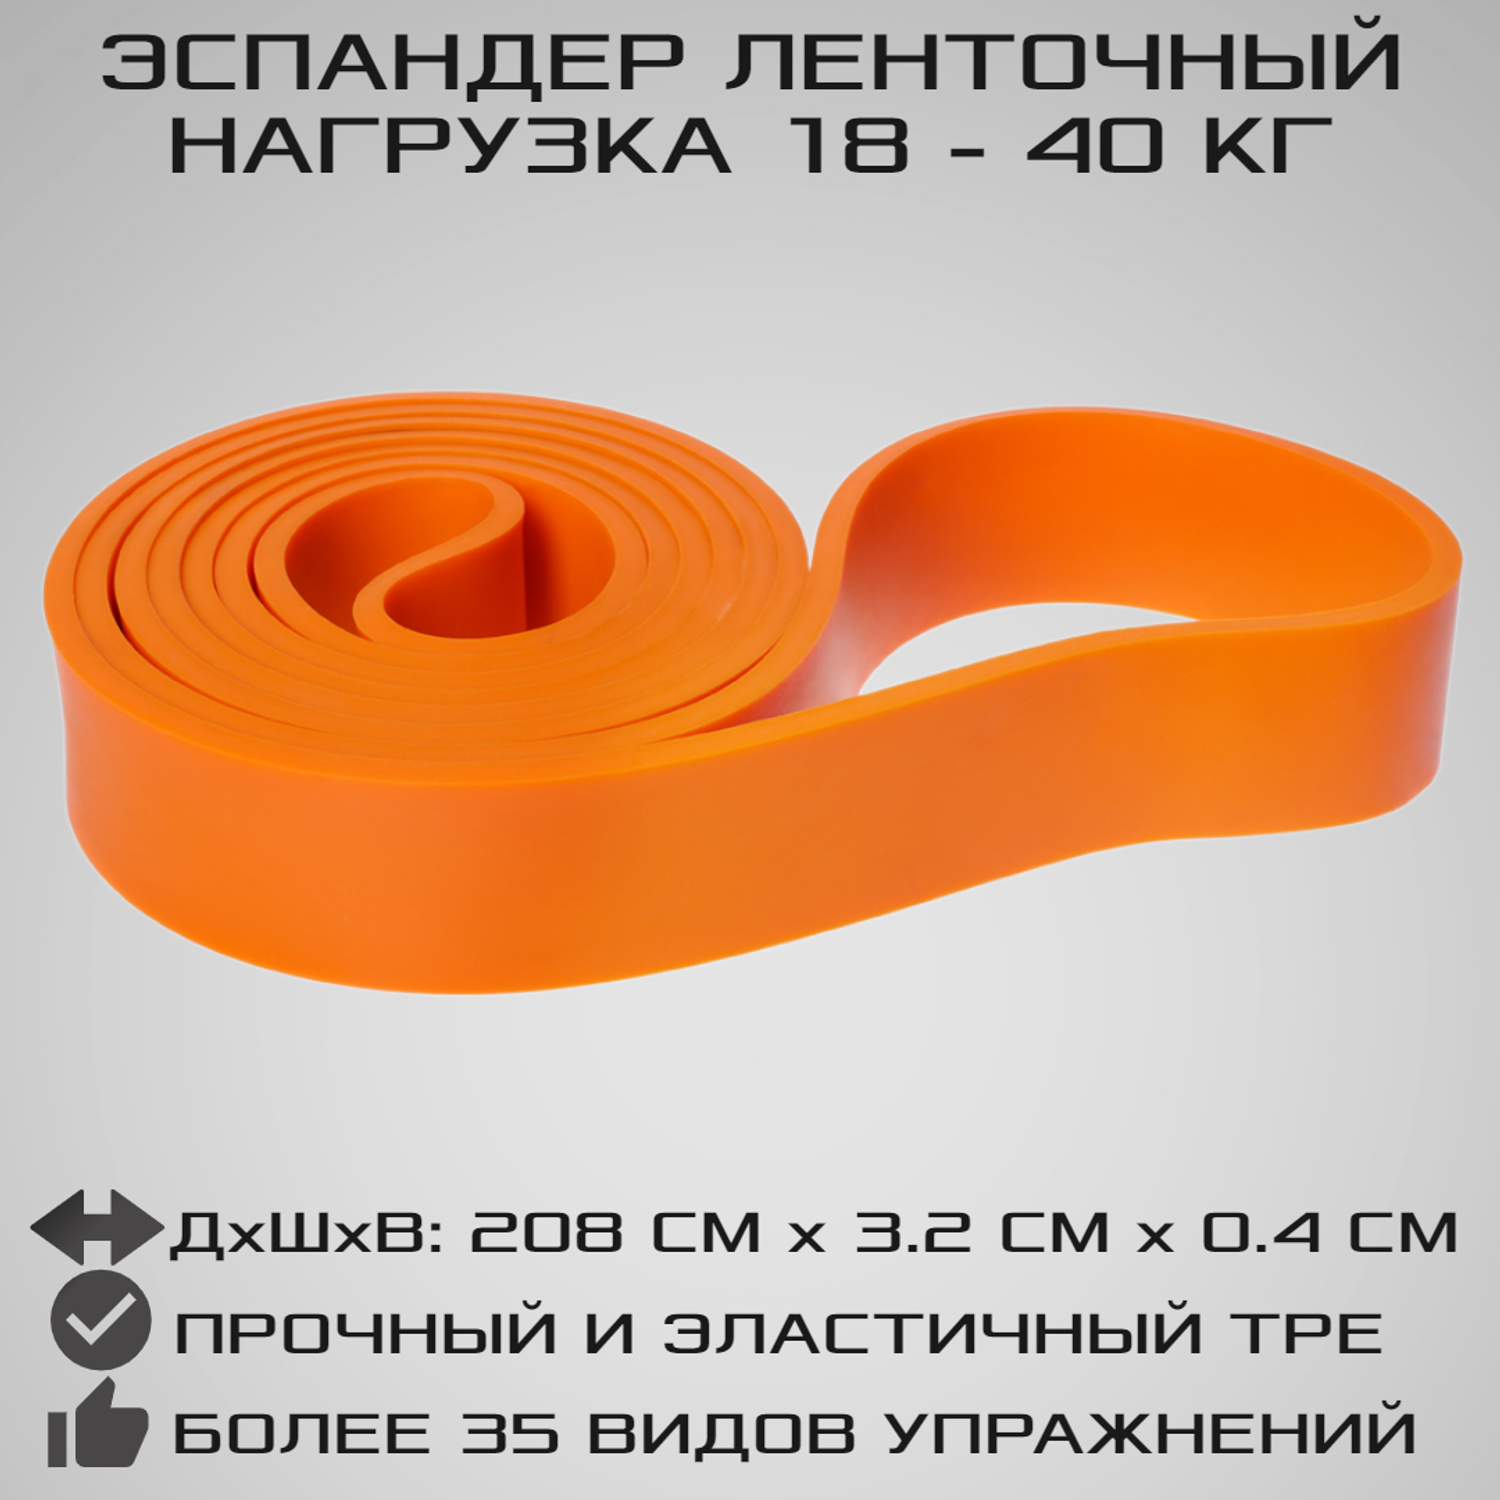 Эспандер ленточный STRONG BODY оранжевый сопротивление от 18 кг до 40 кг - фото 1